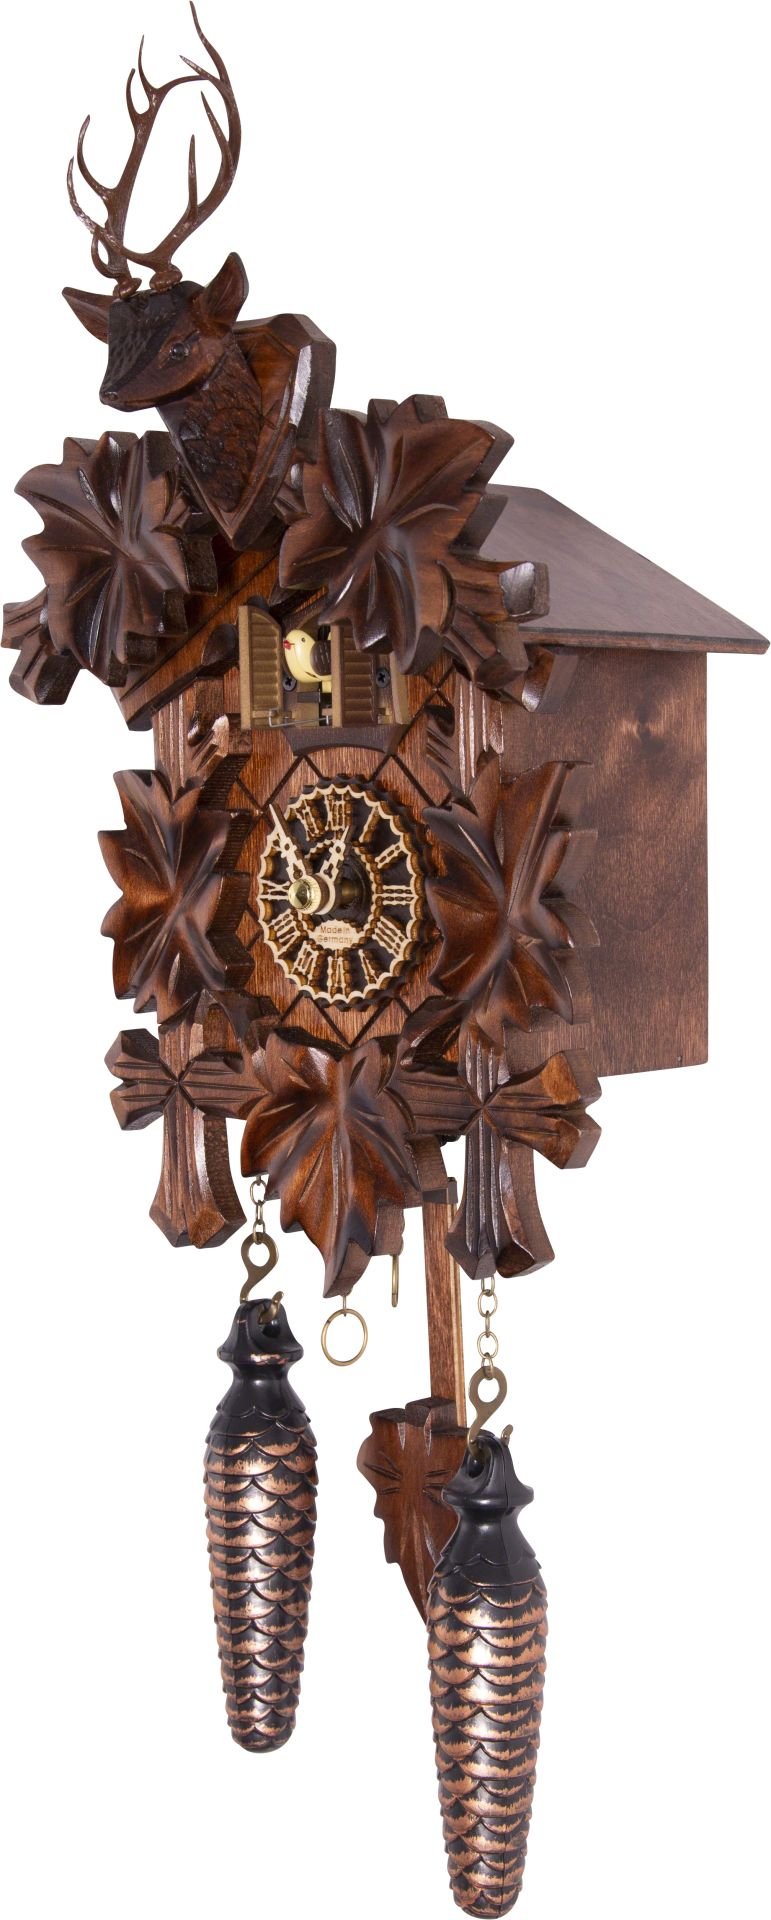 Horloge coucou traditionnelle mouvement à quartz 23cm de Trenkle Uhren